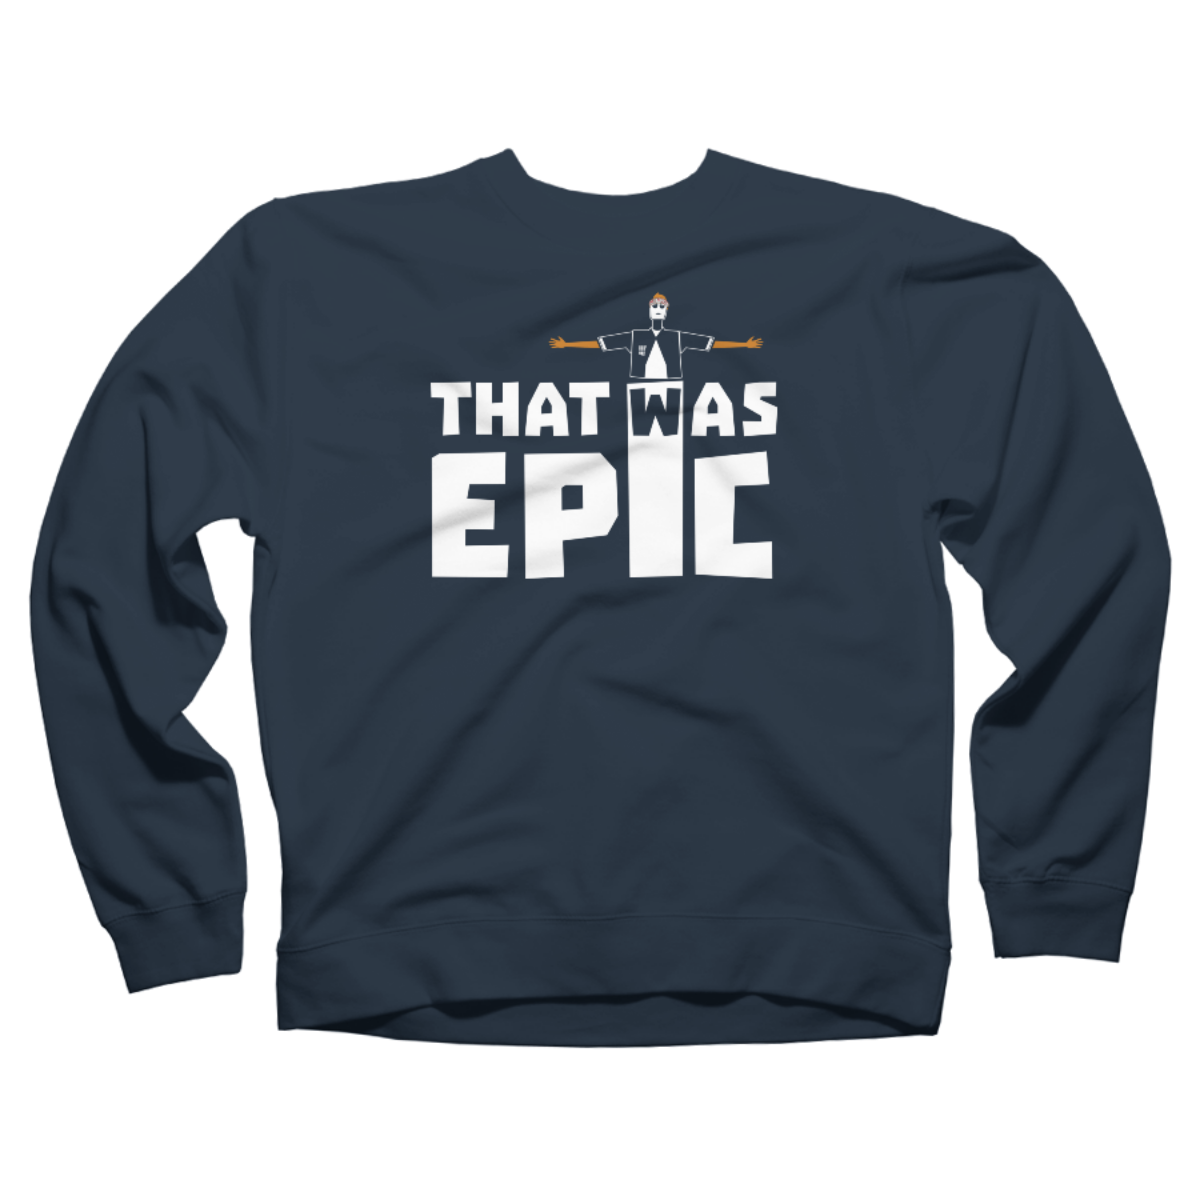 epic sweatshirts